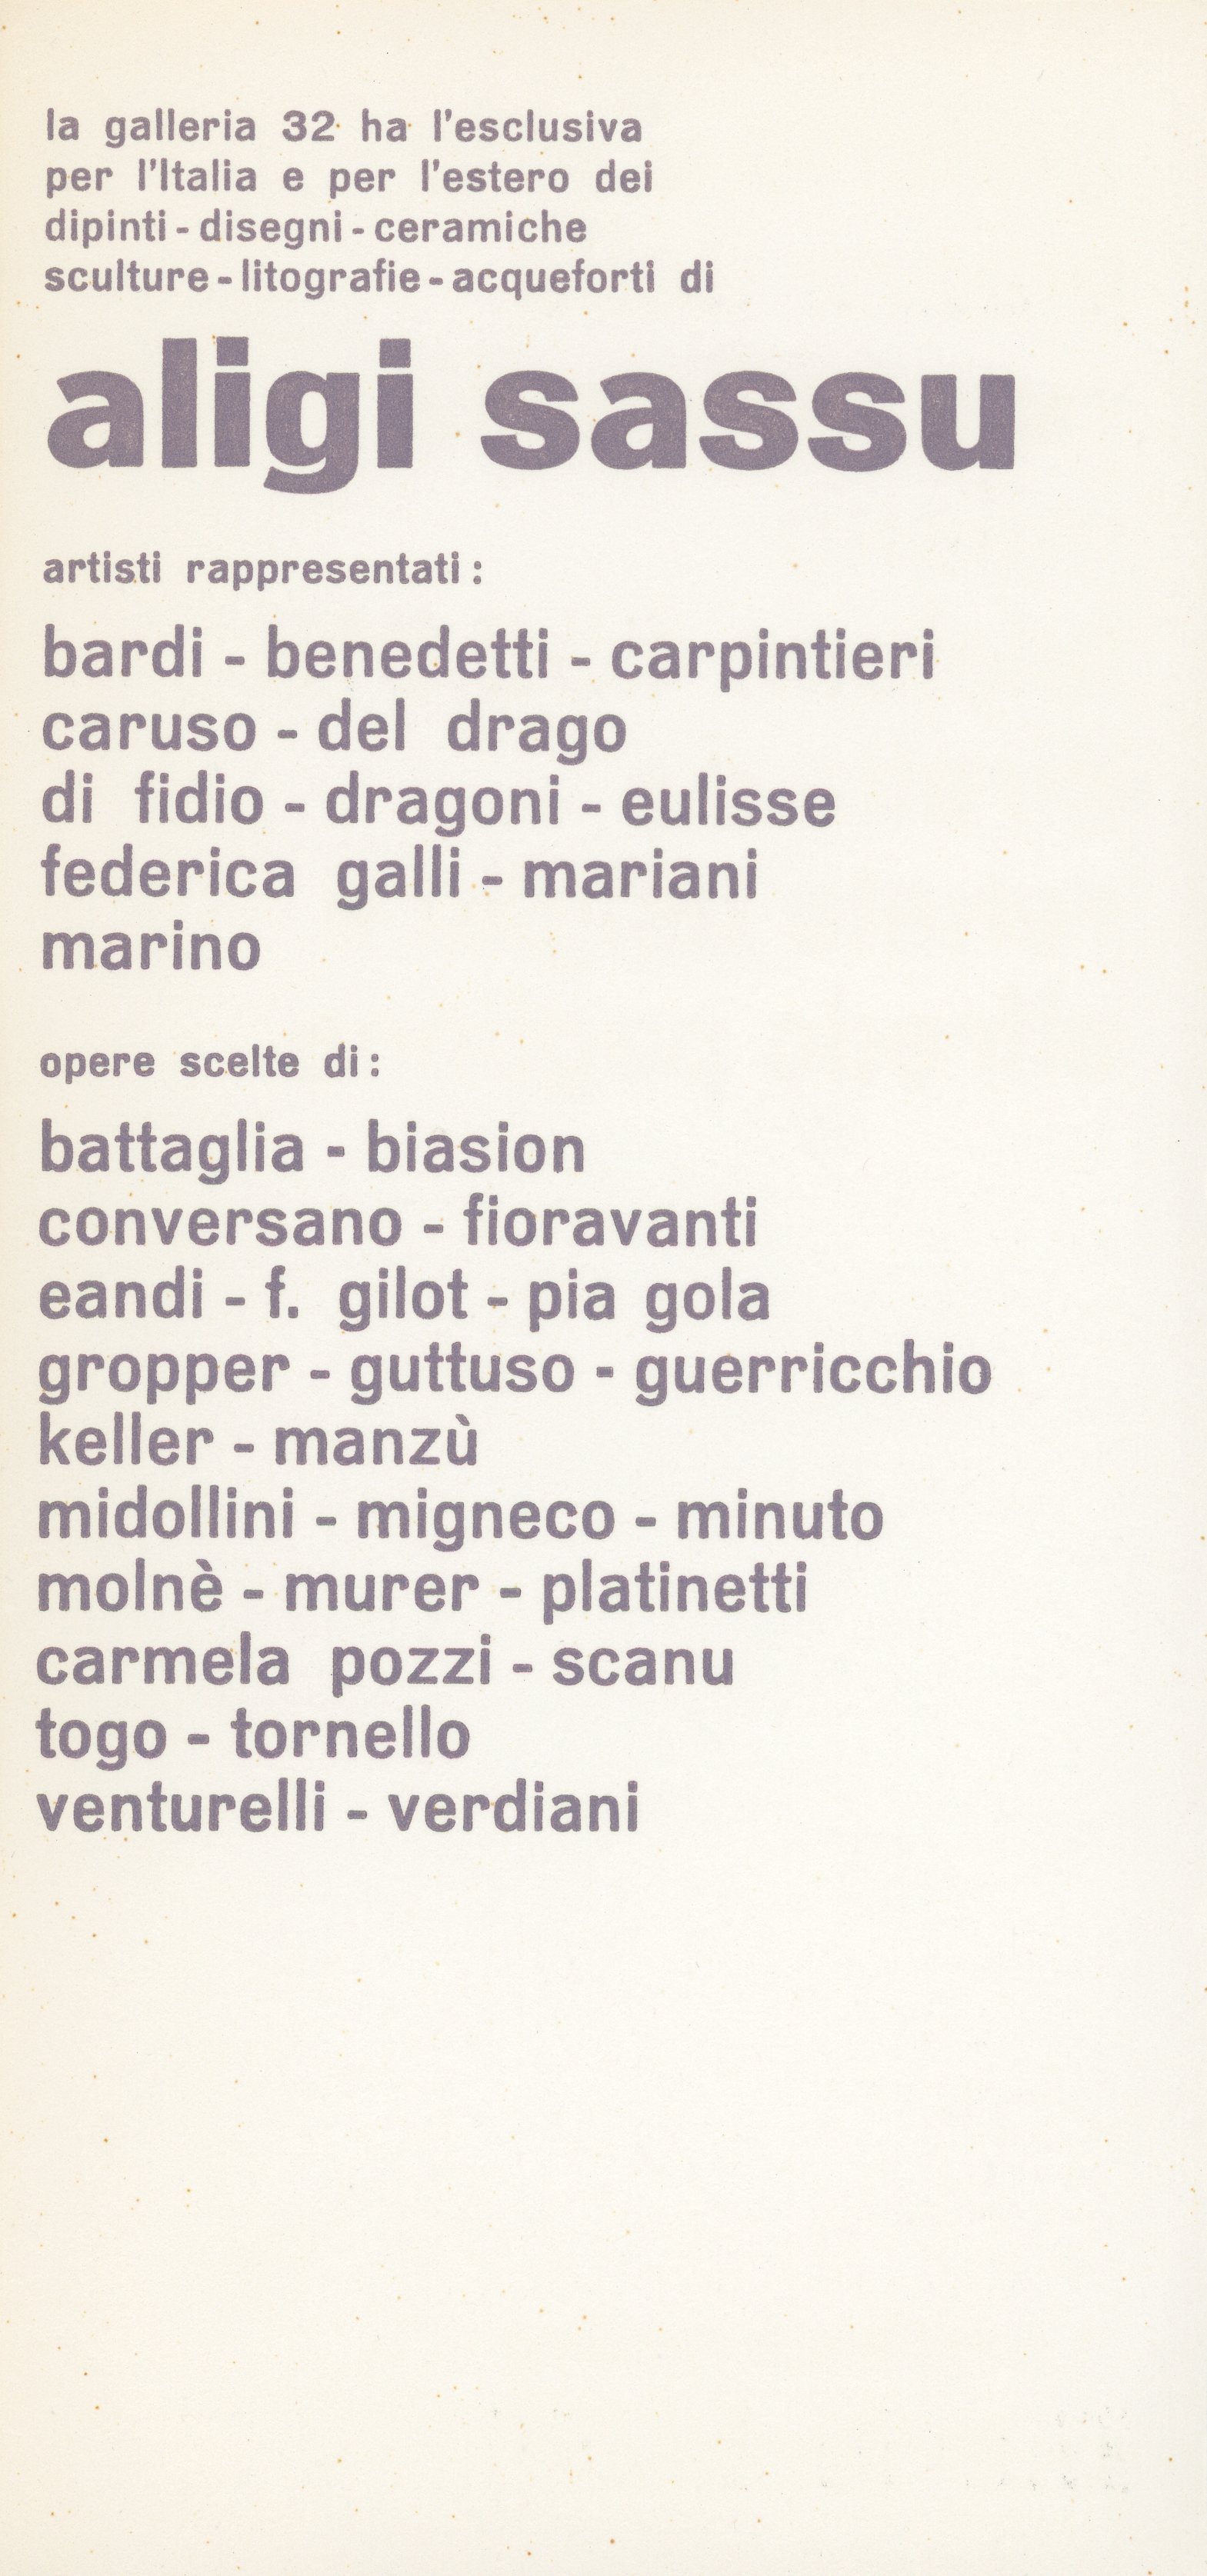 1967-02 Galleria 32 - Bruno Caruso_11.jpg